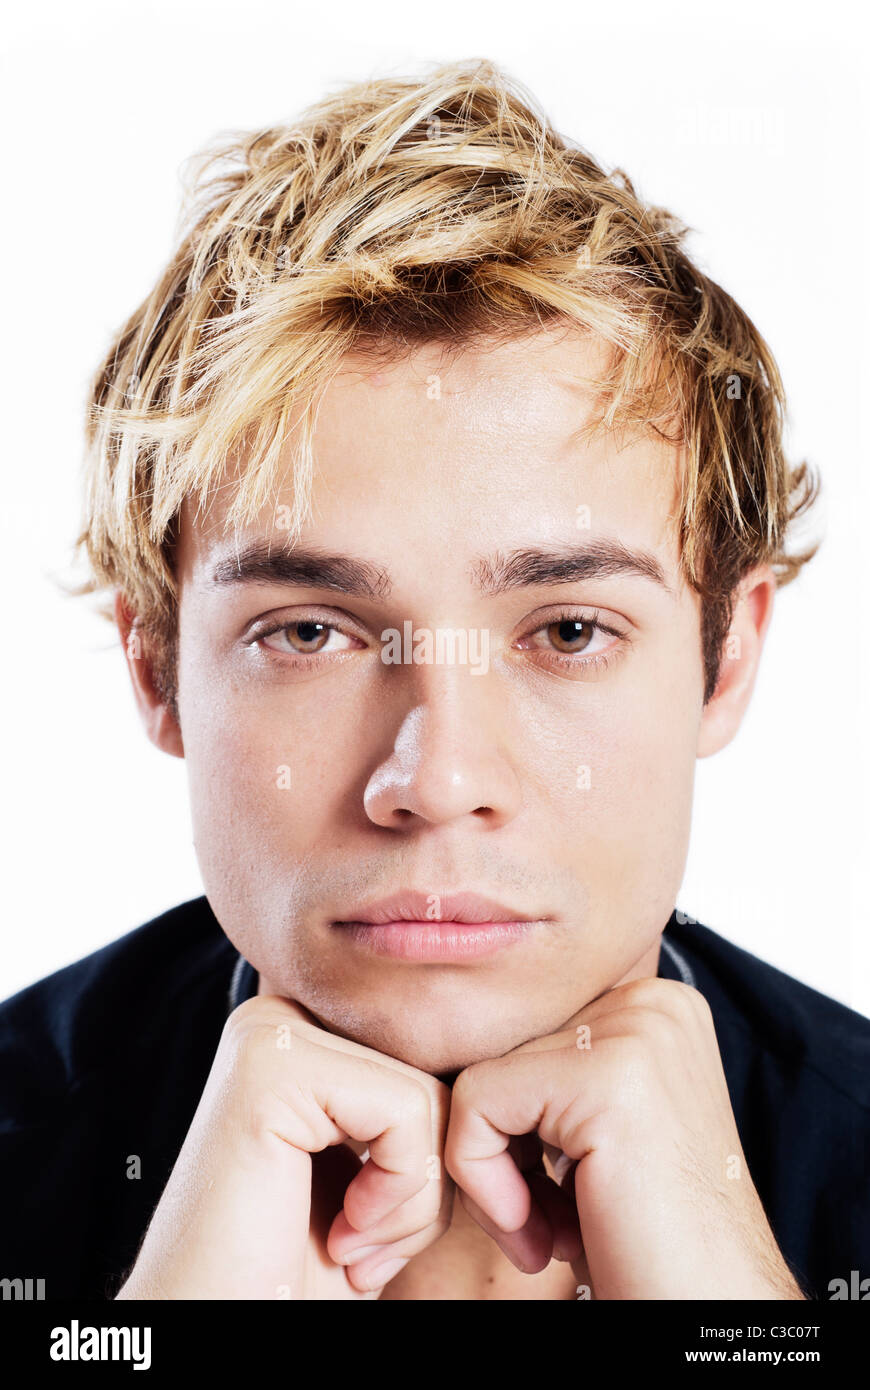 Ritratto di un giovane maschio adulto in camicia nera come si siede con le mani sul mento Foto Stock